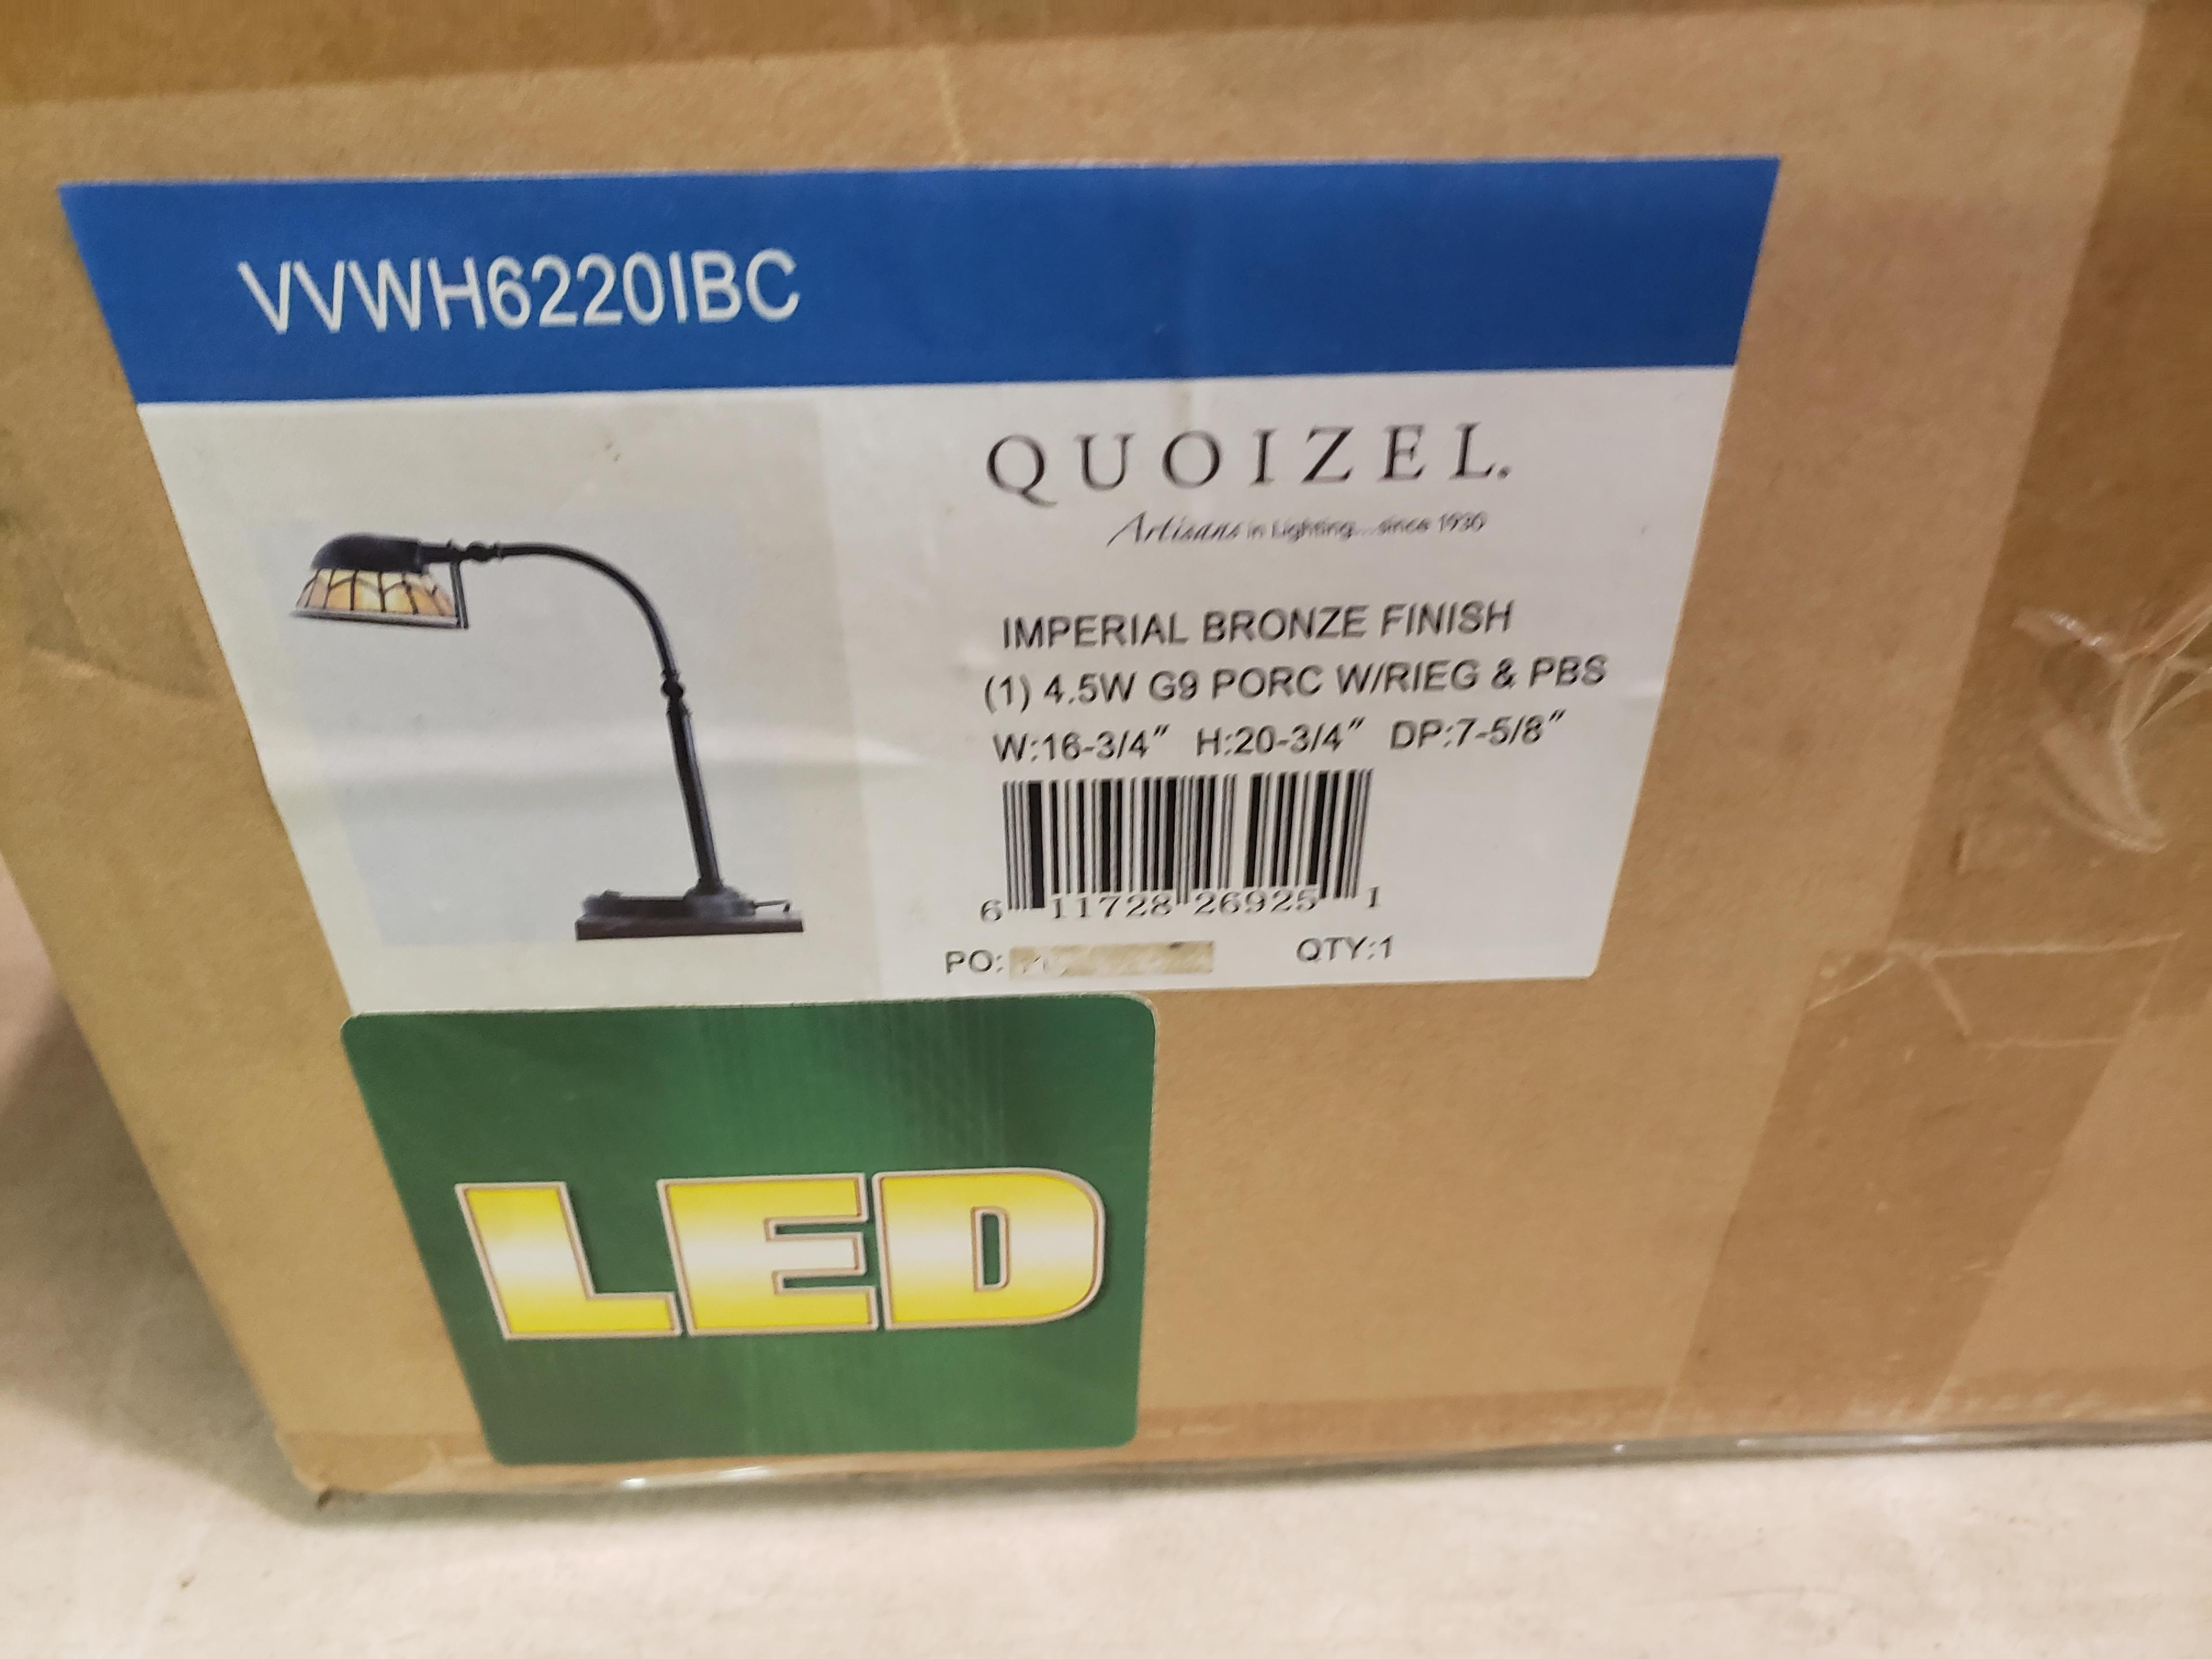 1 NEW QUOIZEL VIVID WHITNEY LED TABLE LAMP VVWH6220IBC LED LIGHT FIXTURE